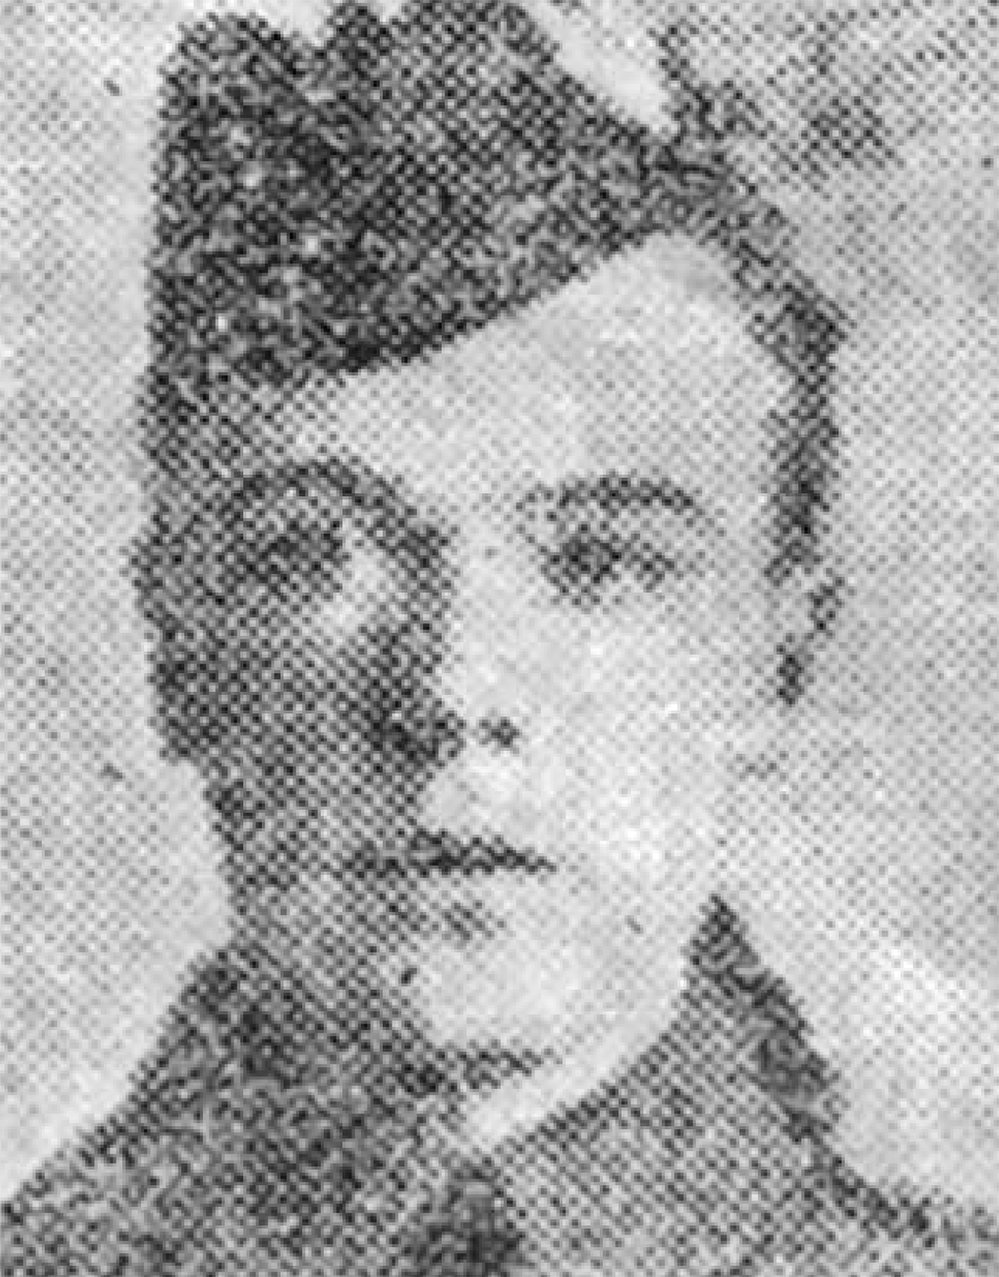 Portrait of Private Bernard Connolly